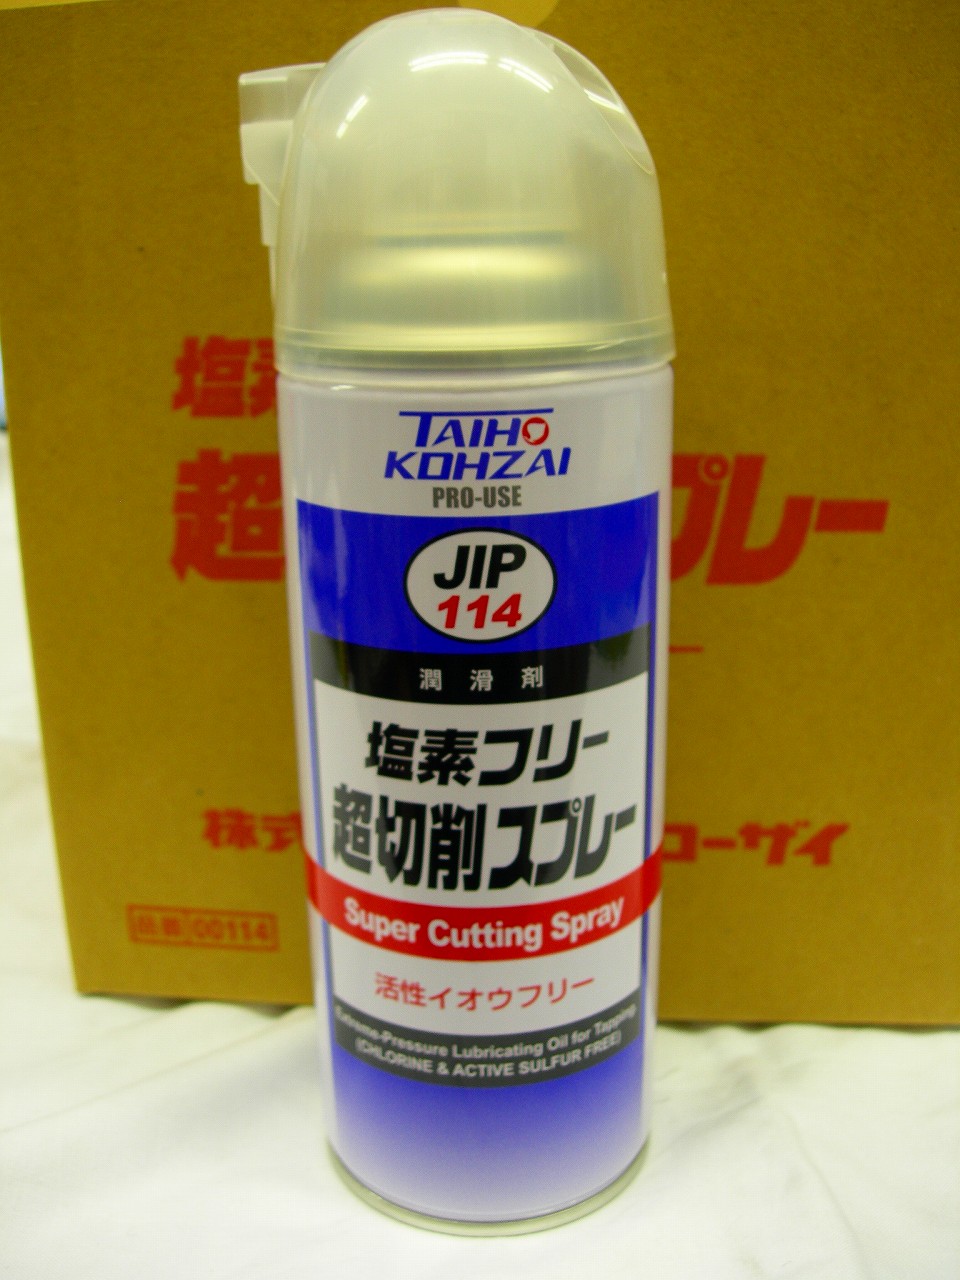 タイホーコーザイ TAIHO KOHZAI JIP114 超切削スプレー 塩素&活性イオウ フリータイプ 420ml ばら売り不可　6本1箱　1箱ゆうパック80サイズ　在庫僅か